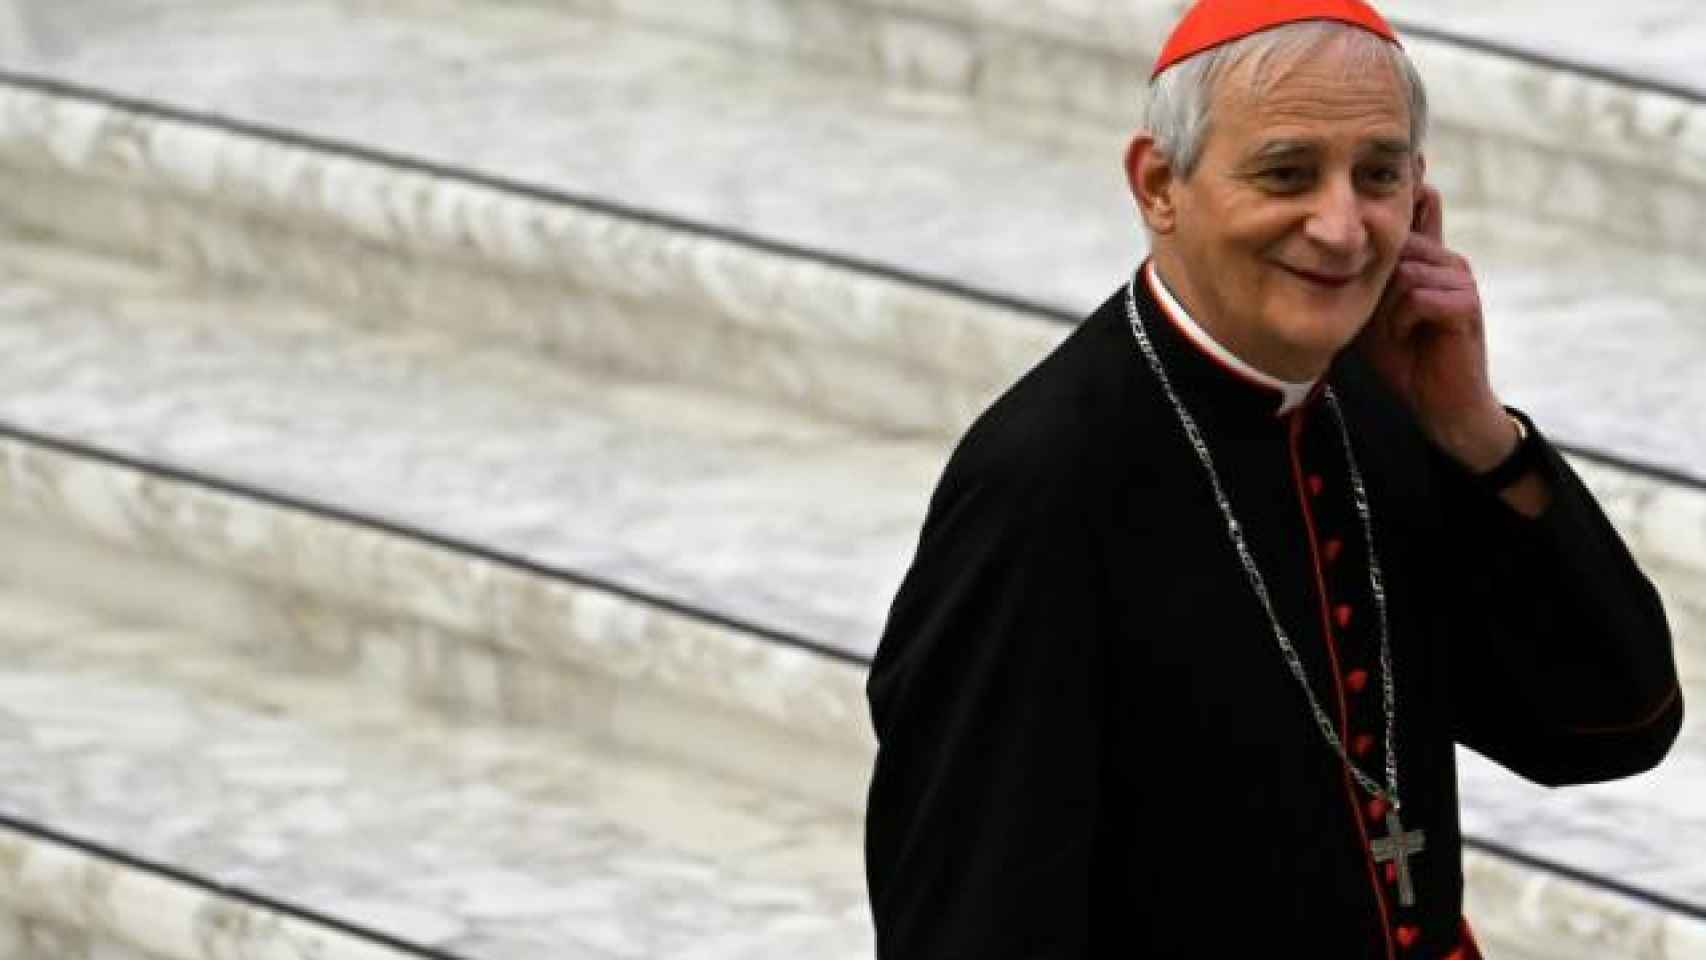 El cardenal Zuppi, arzobispo de Bolonia